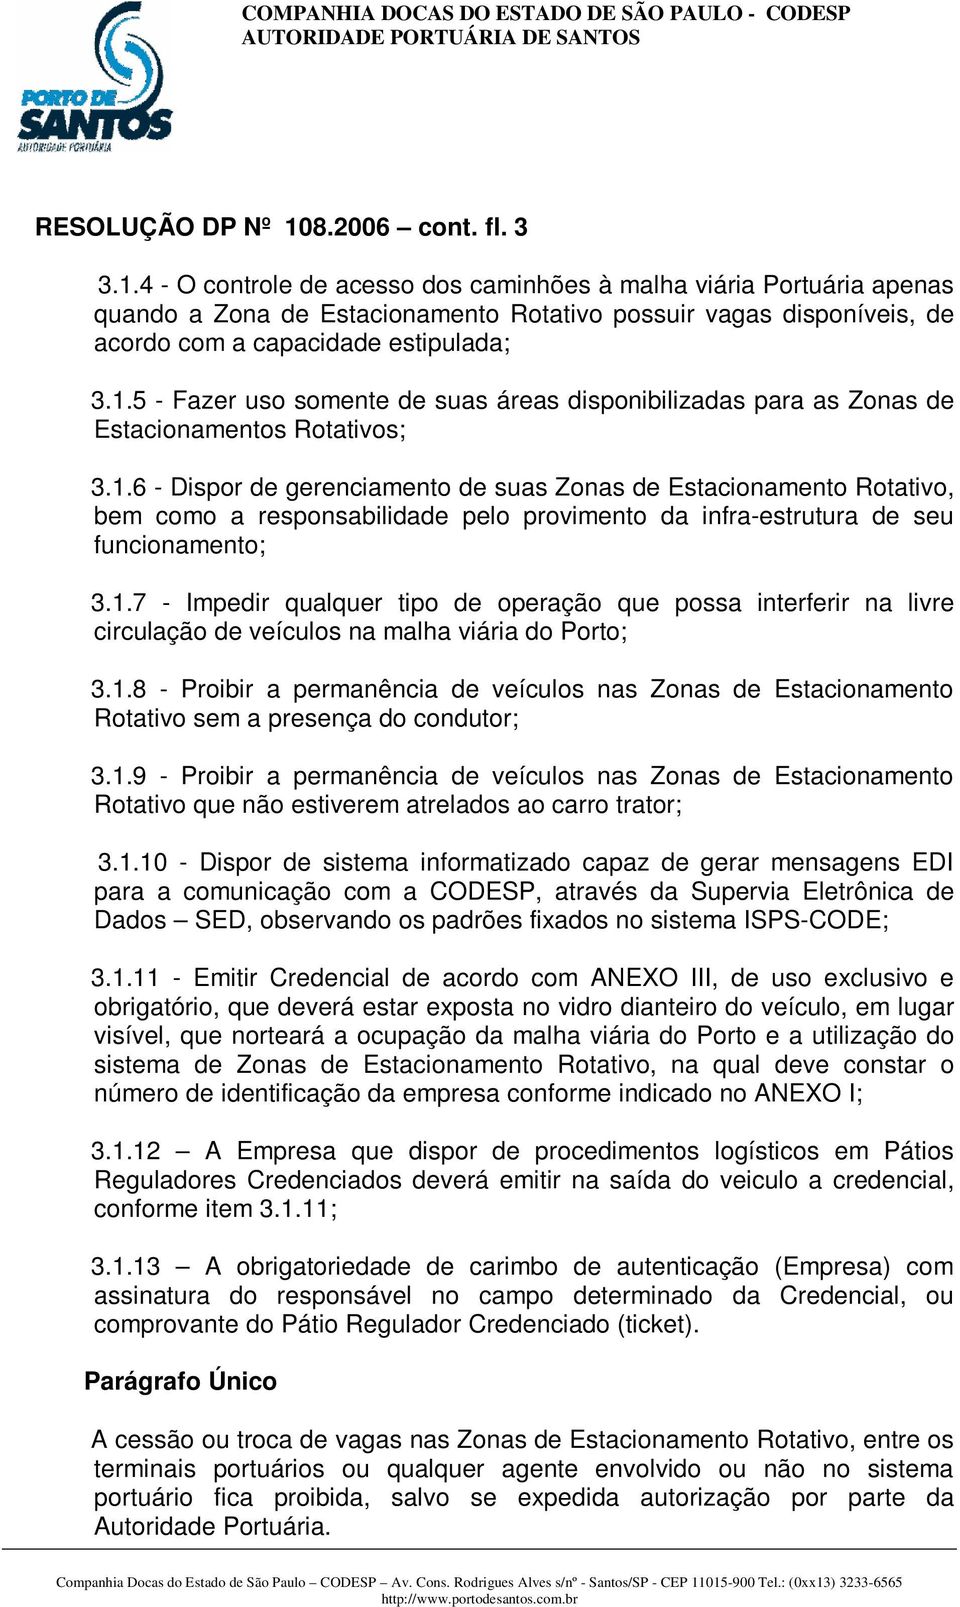 1.7 - Impedir qualquer tipo de operação que possa interferir na livre circulação de veículos na malha viária do Porto; 3.1.8 - Proibir a permanência de veículos nas Zonas de Estacionamento Rotativo sem a presença do condutor; 3.